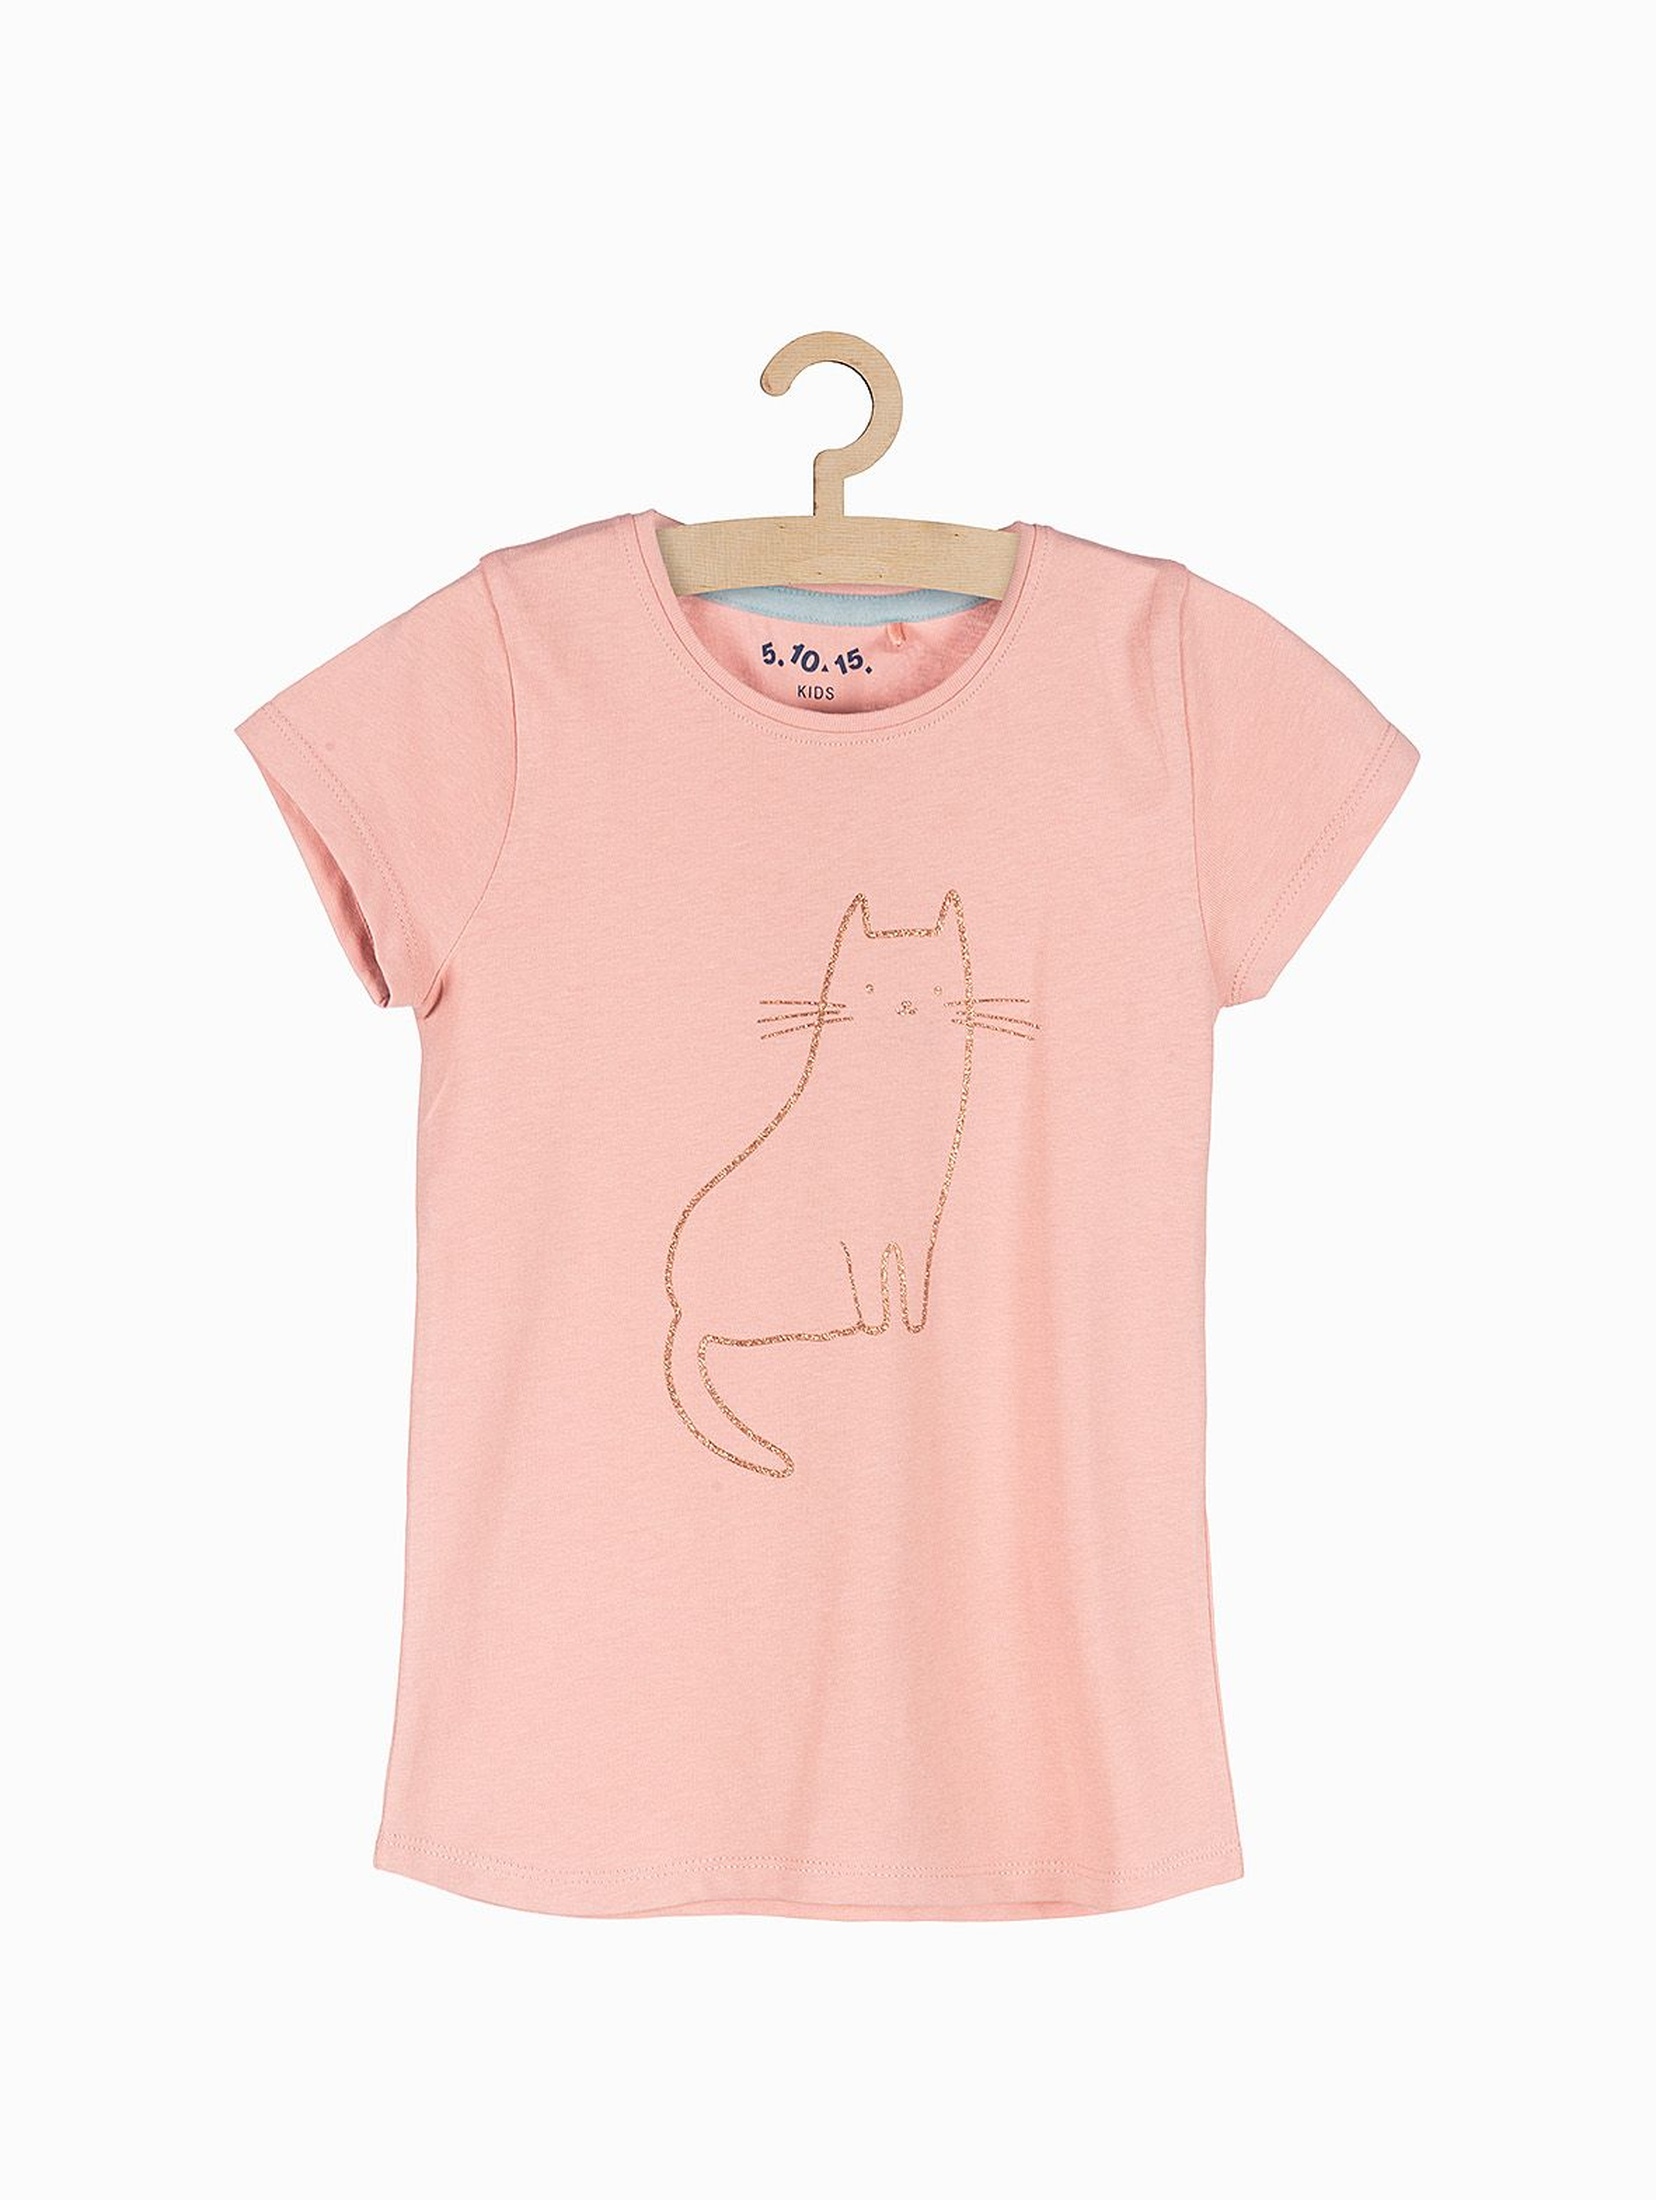 Różowy tshirt dziewczęcy z brokatowym kotem